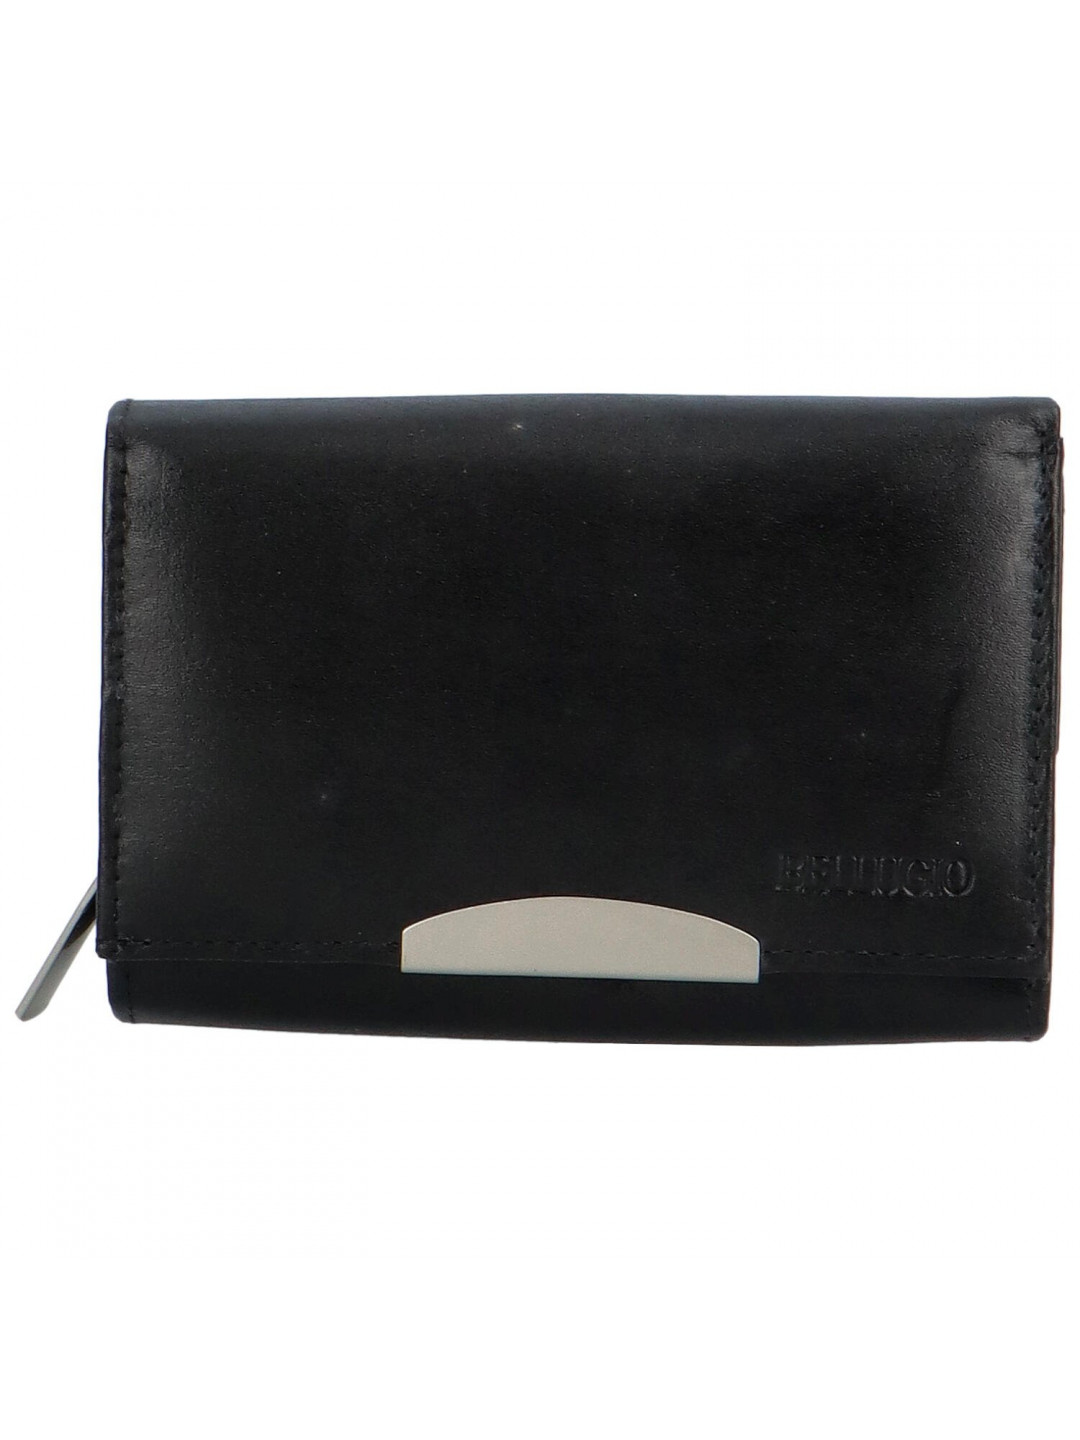 Luxusní dámská kožená peněženka Alenop černá